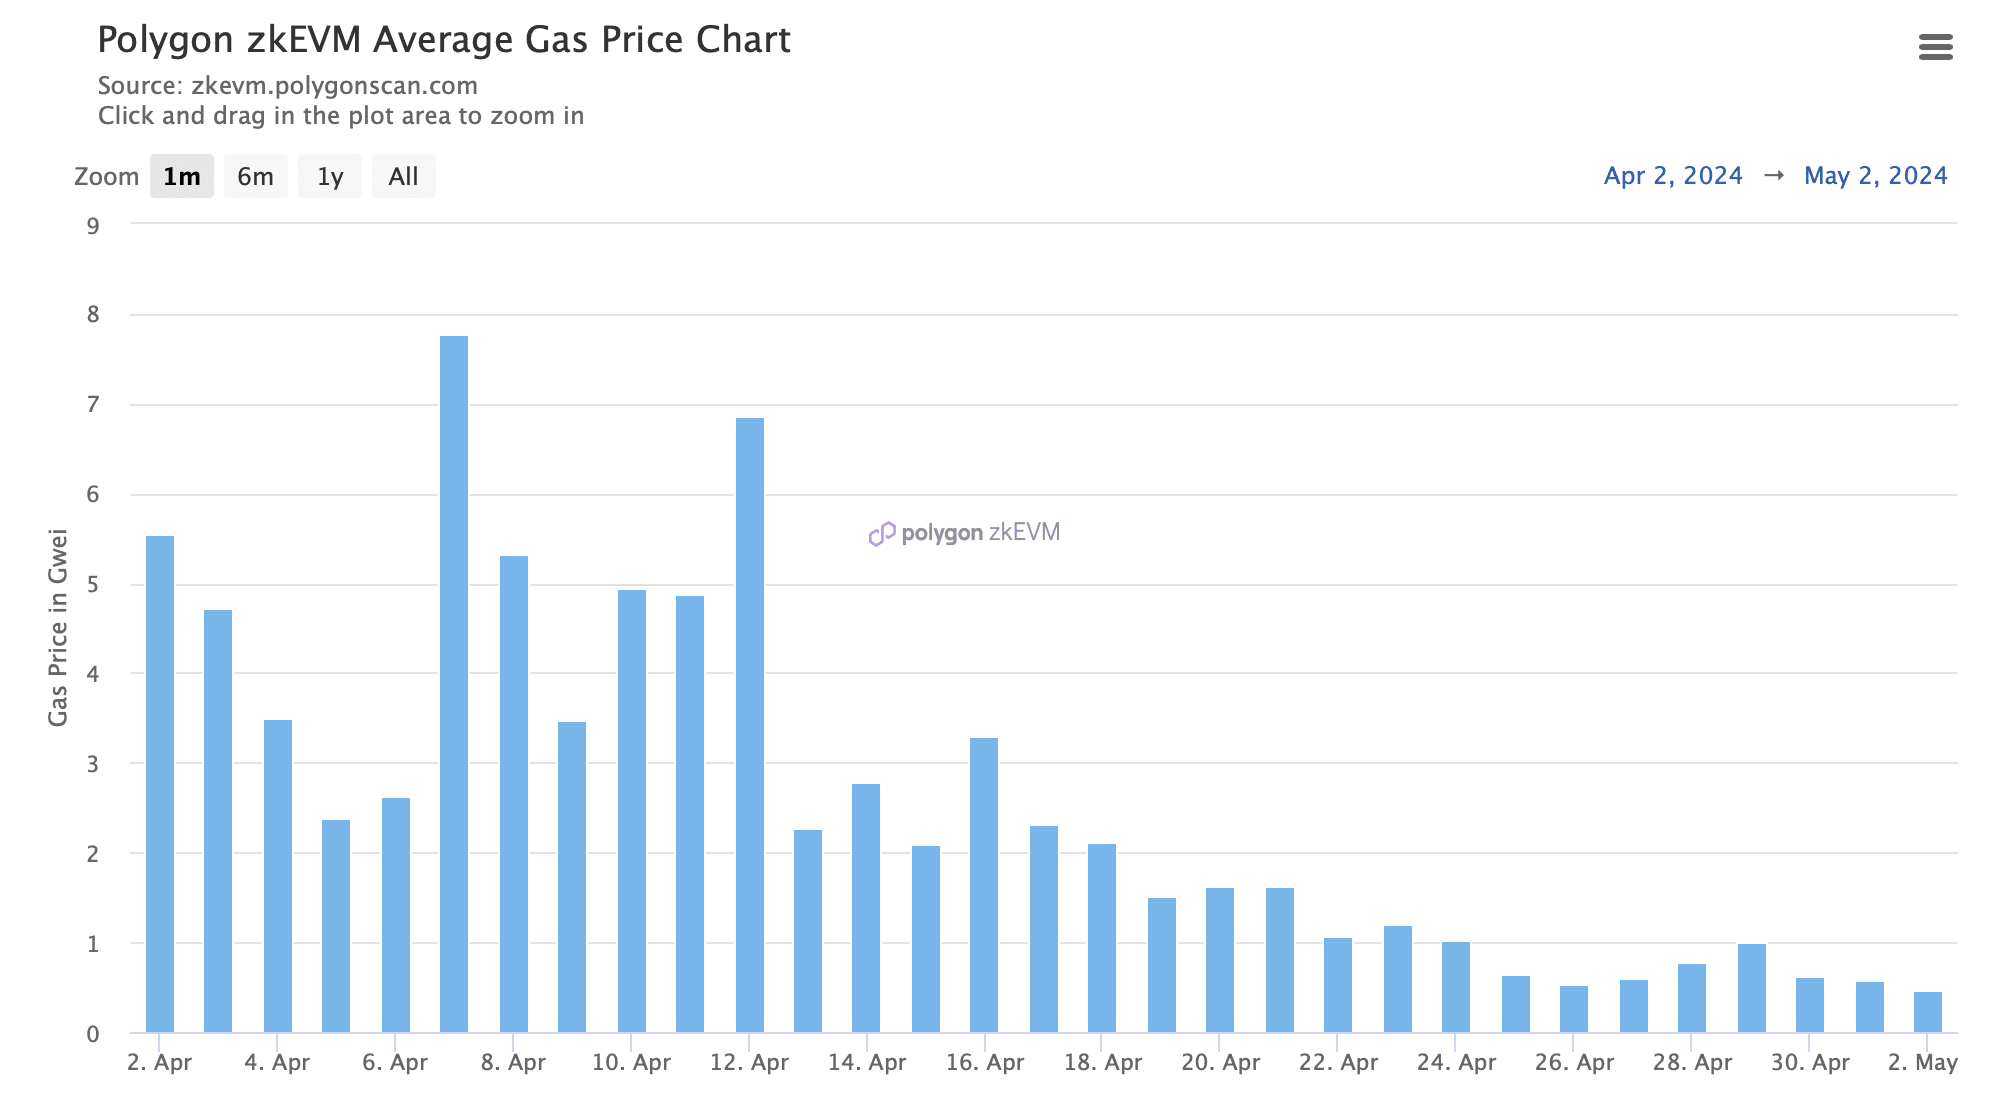 zkEVM'de gazın fiyatı düştü